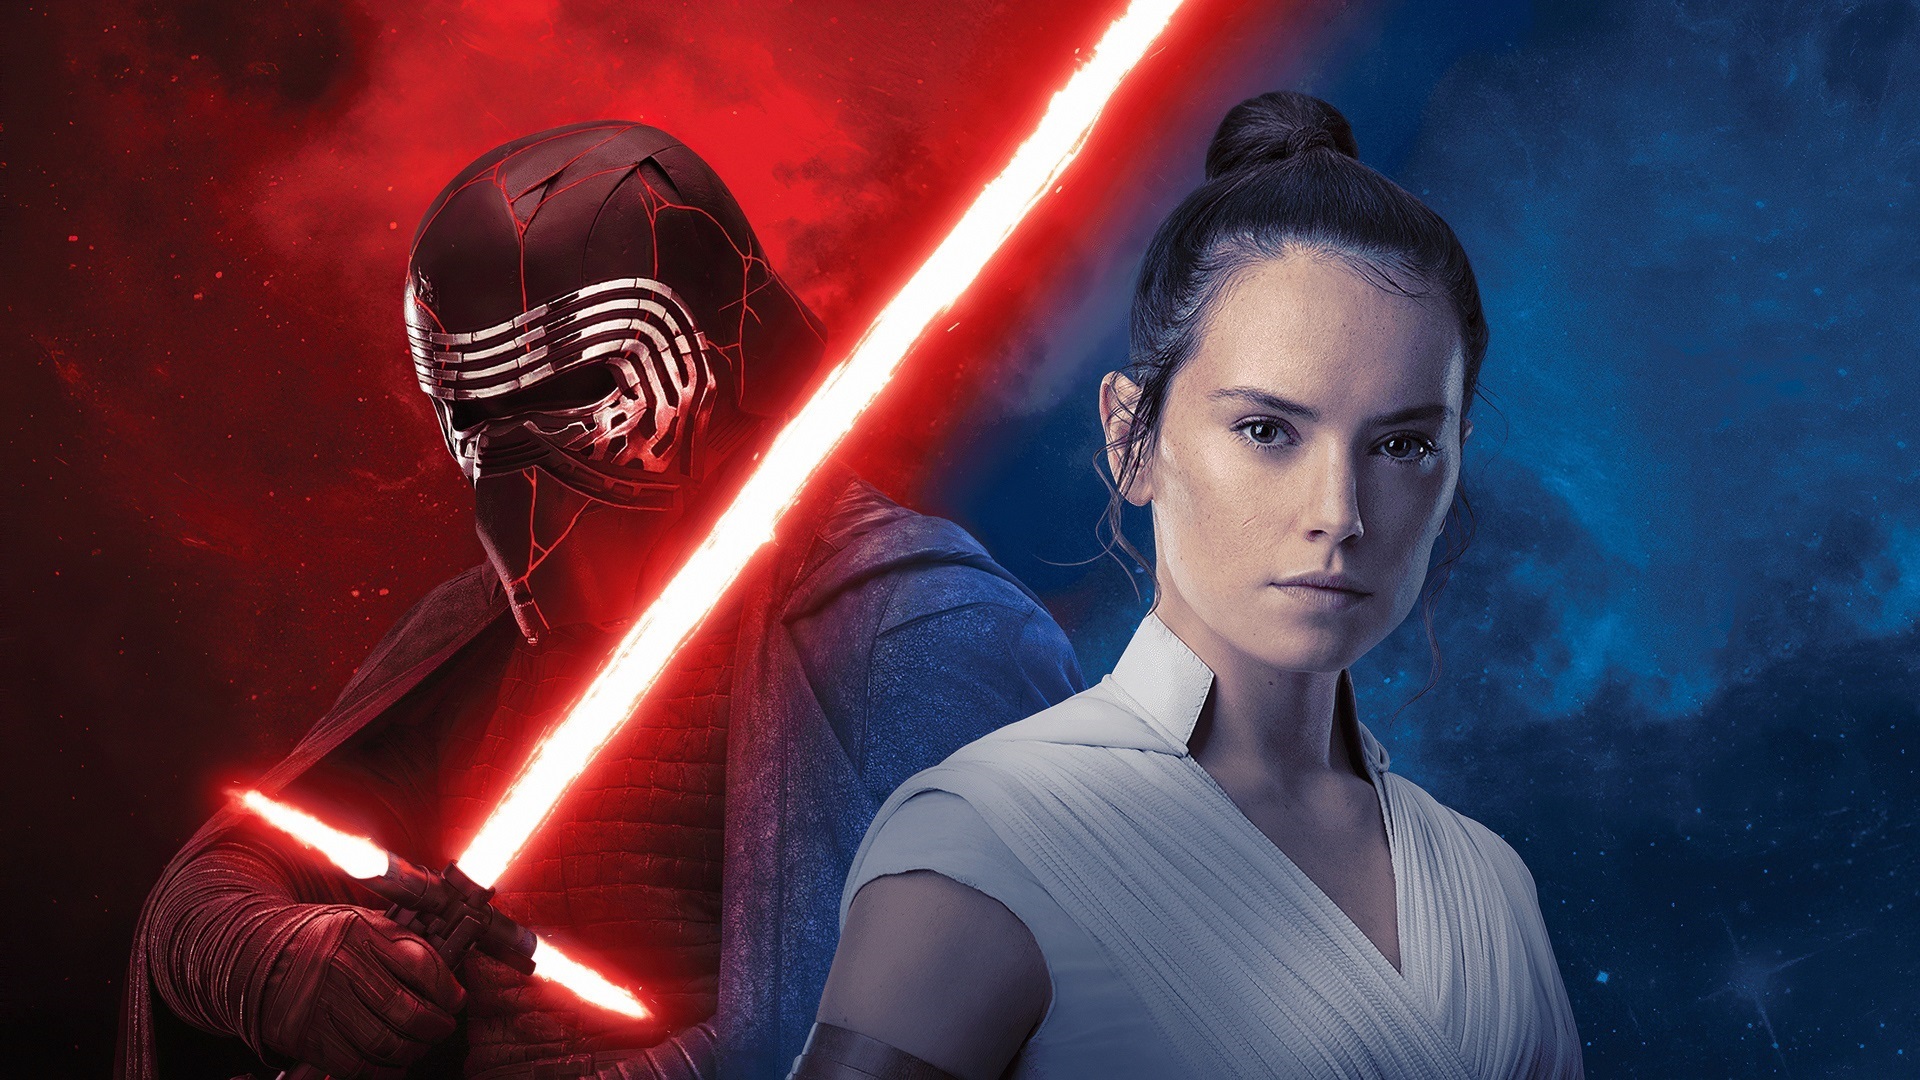 Atores da nova trilogia podem retornar para franquia de Star Wars